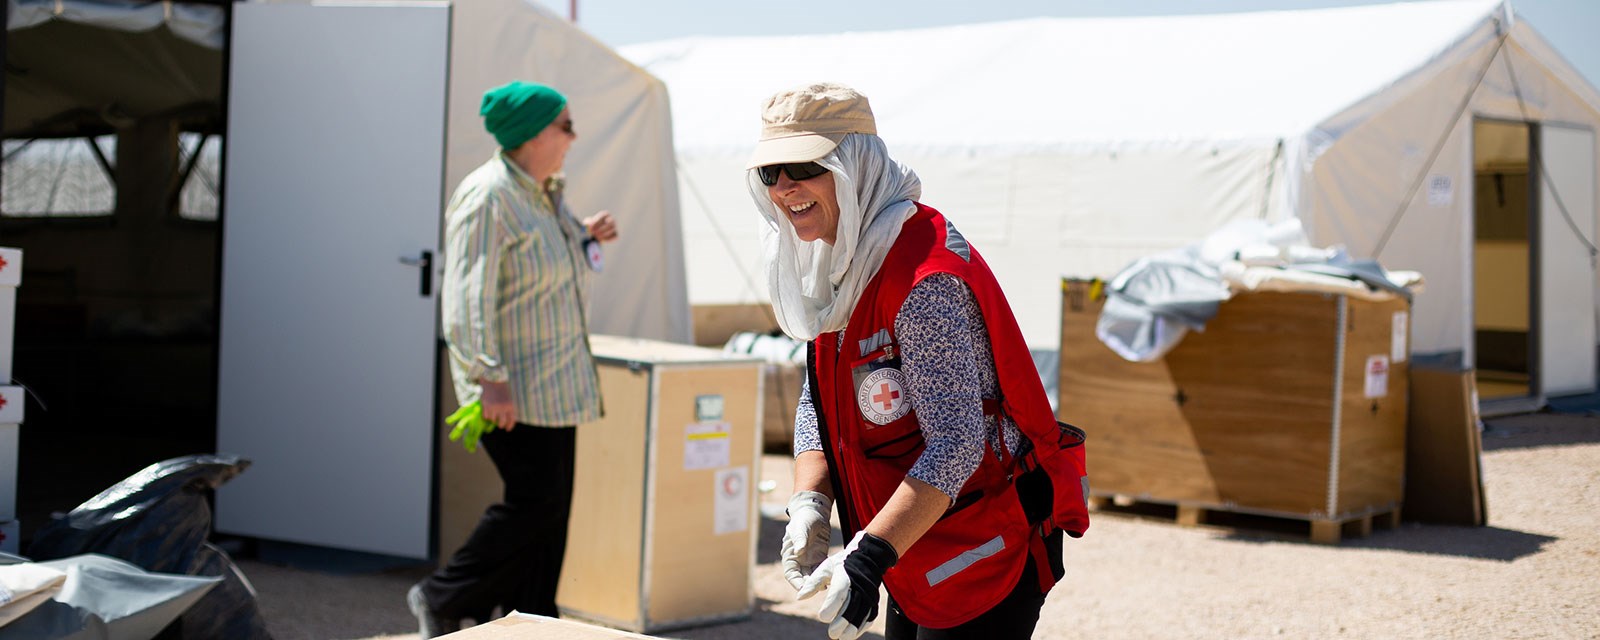 En kvinnelig Røde Kors delegat i flyktningleir jobber i stekende sol